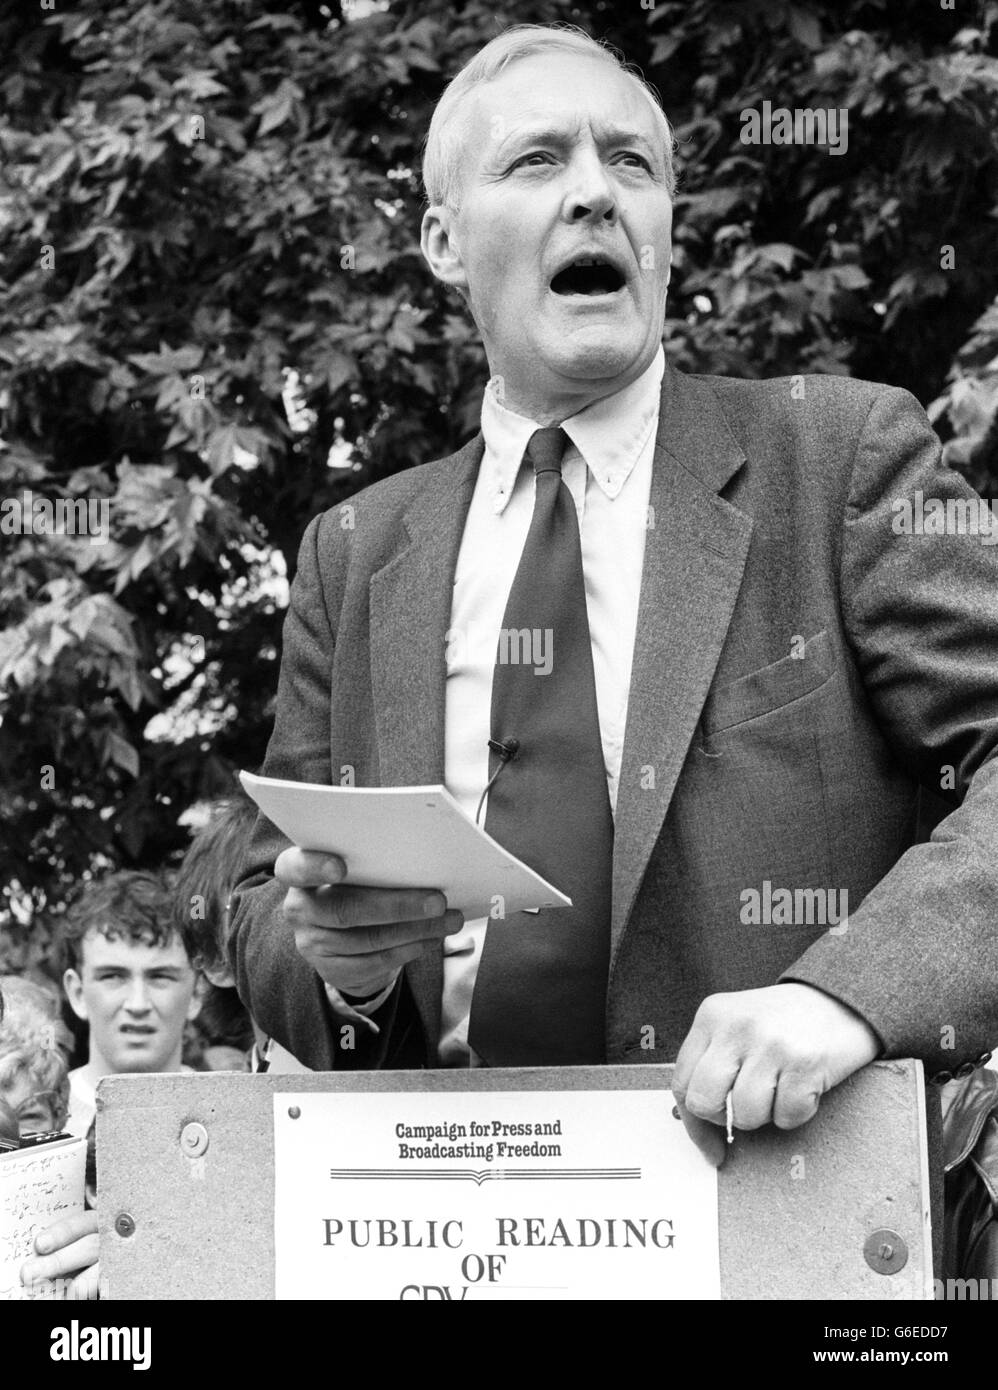 Tony Benn MP, bocca aperta in pieno flusso, leggendo estratti del libro bandito Spycatcher dallo stand soapbox a Hyde Park come parte di una dimostrazione da parte della Campagna per la Stampa e la libertà di trasmissione. Foto Stock